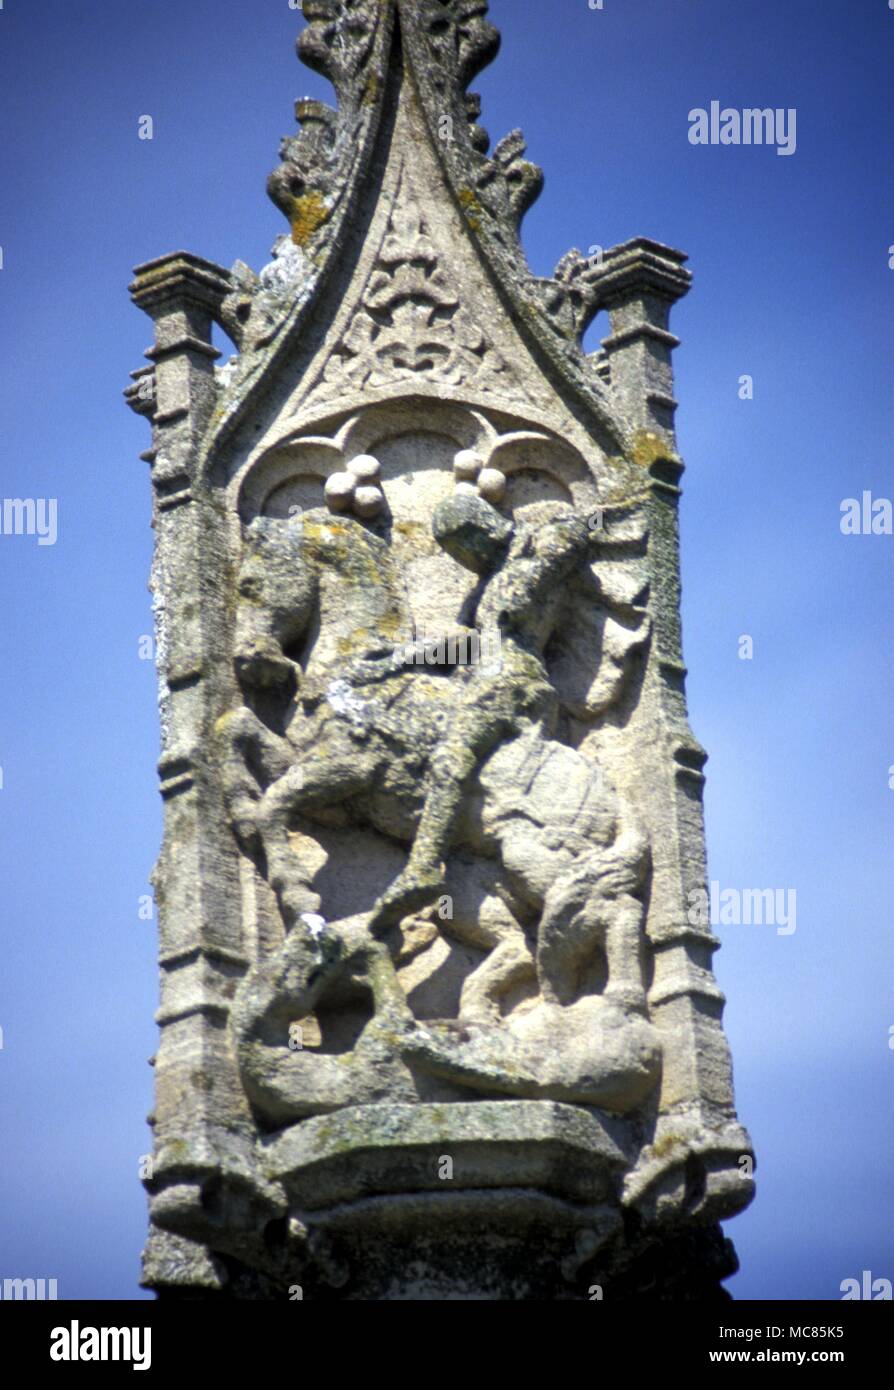 La mitologia. Nel sagrato della chiesa di Tutti i Santi in Ala, Buckinghamshire è una alta croce medioevale sormontata da un'immagine di San Giorgio e il drago. Foto Stock